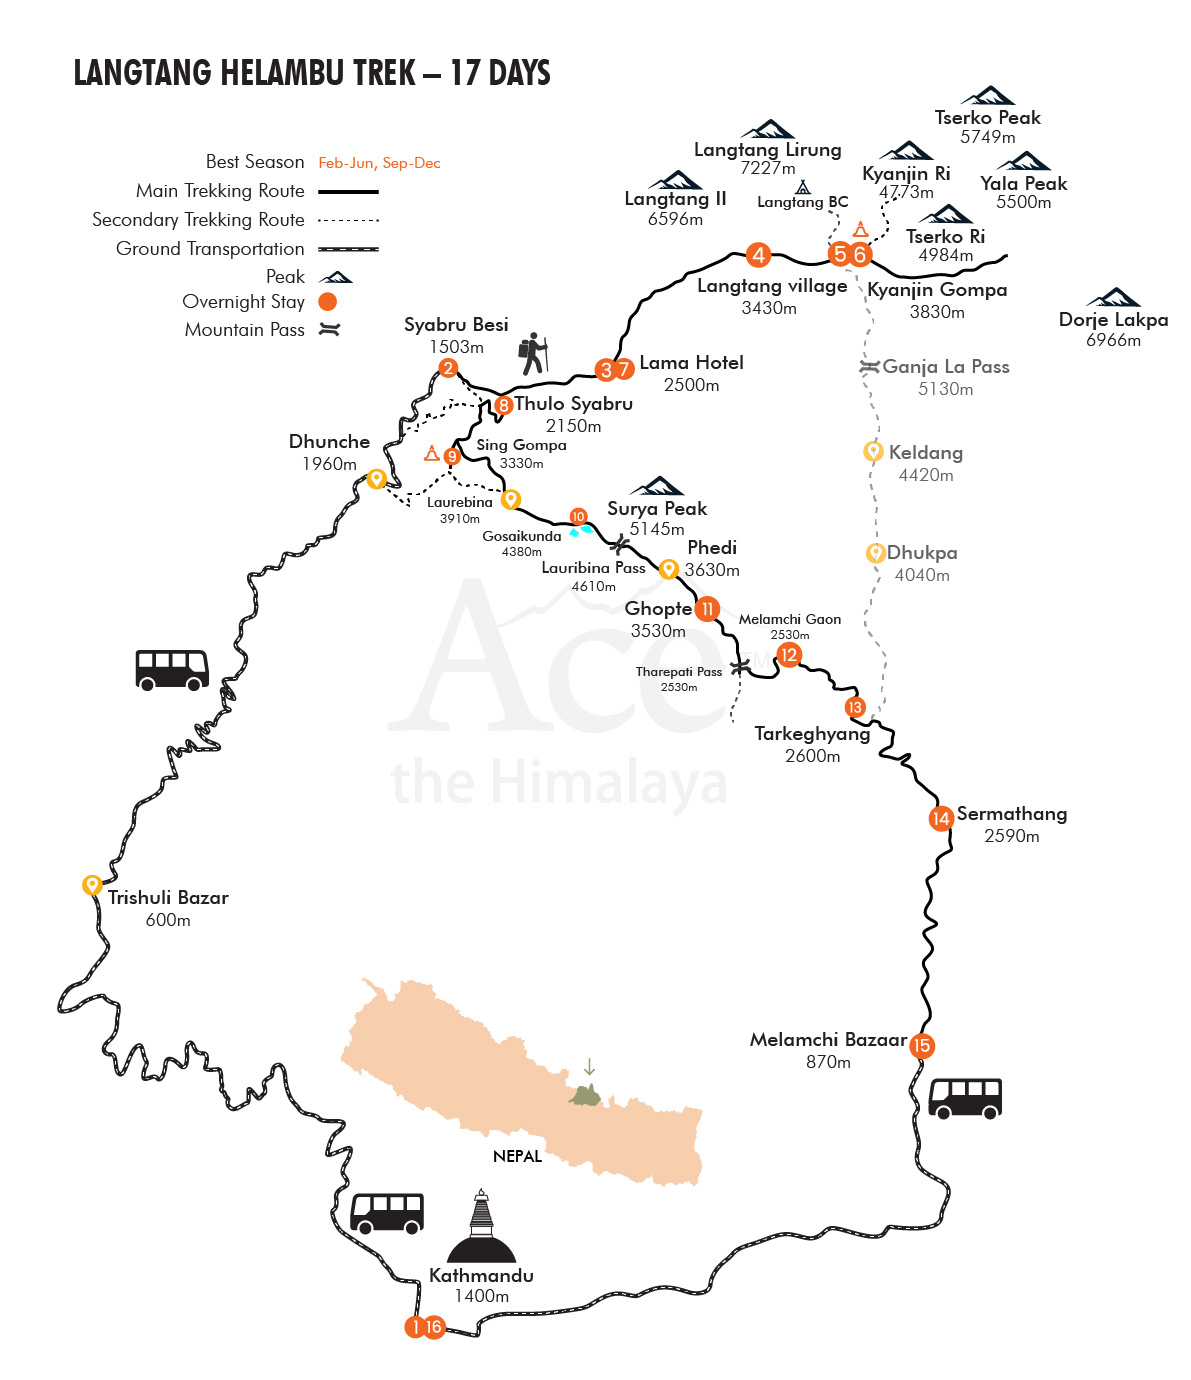 Langtang Helambu Trek map